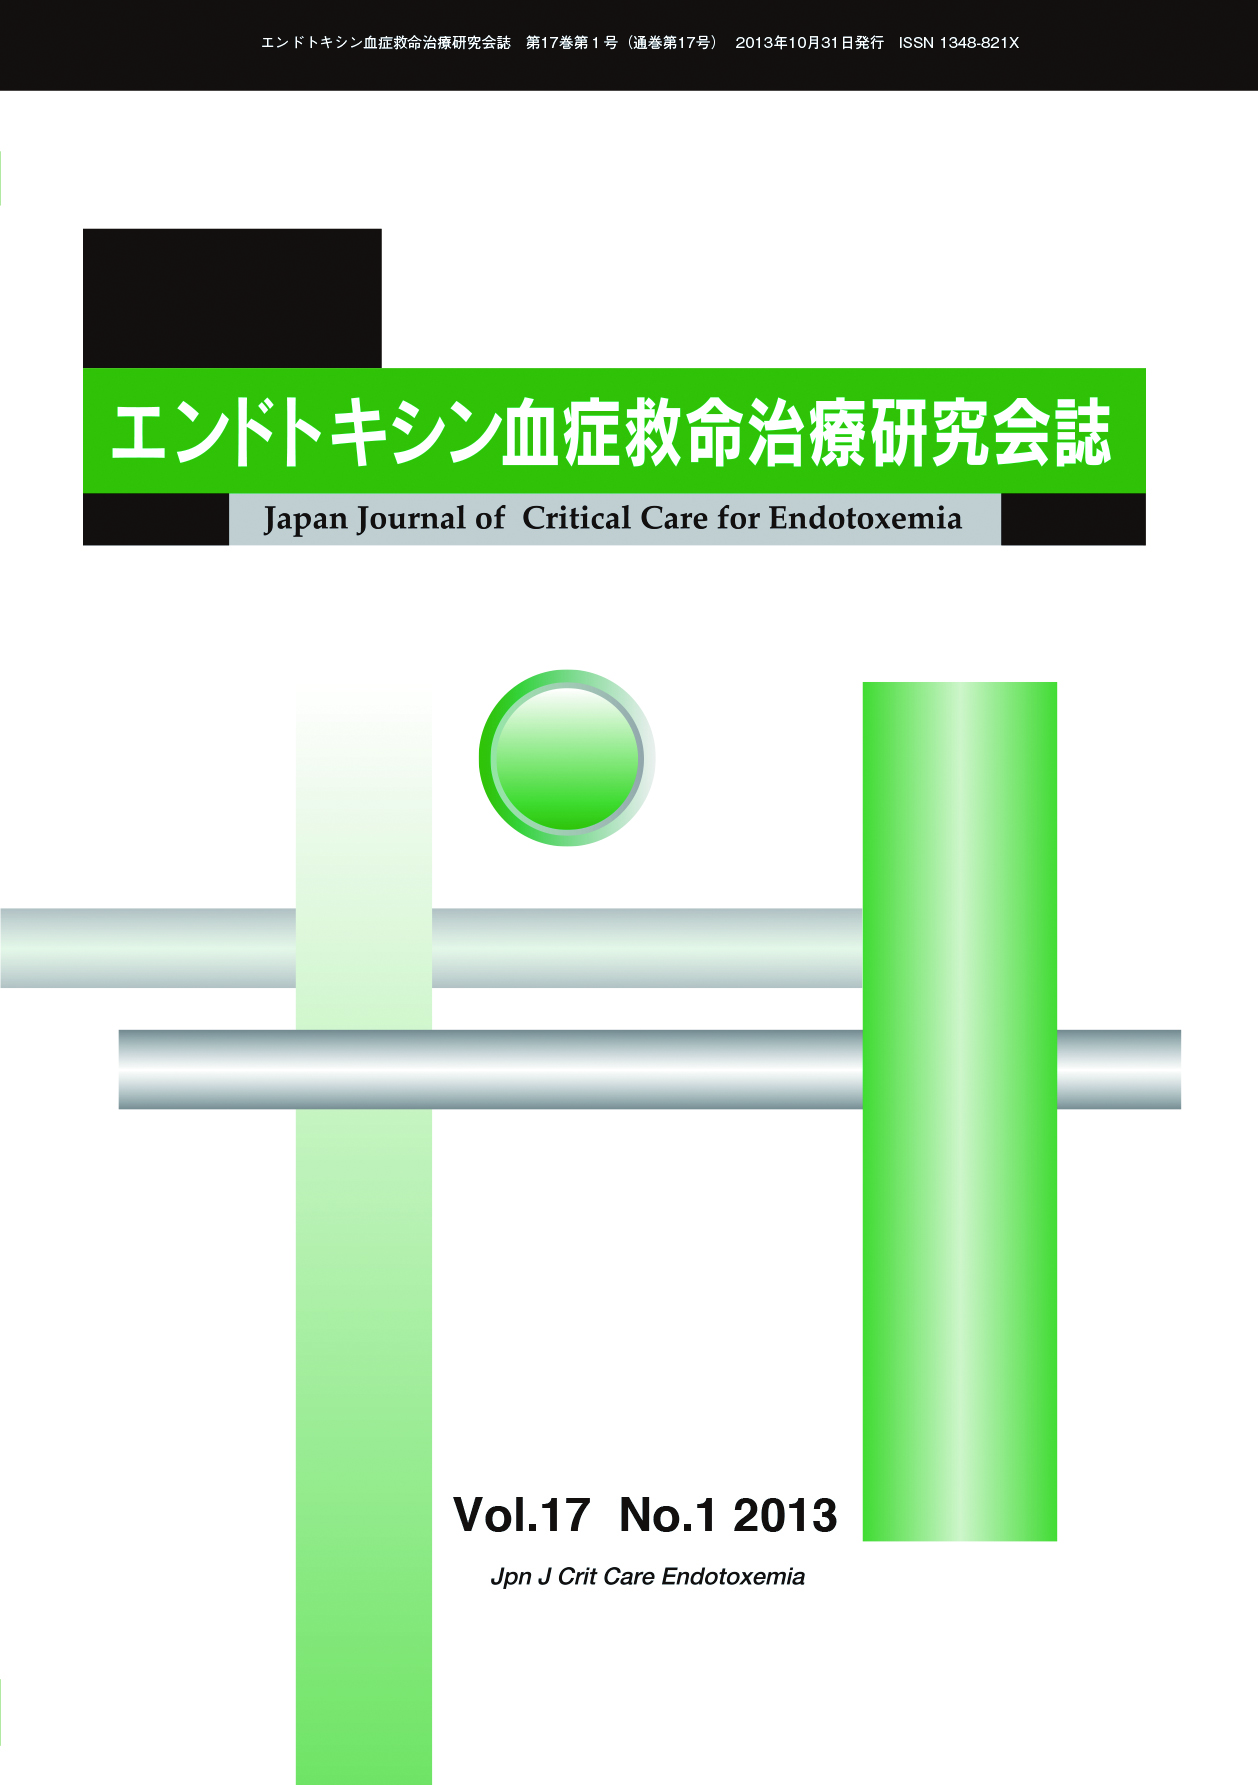 エンドトキシン血症救命治療研究会誌 Vol.17 No.1 2013